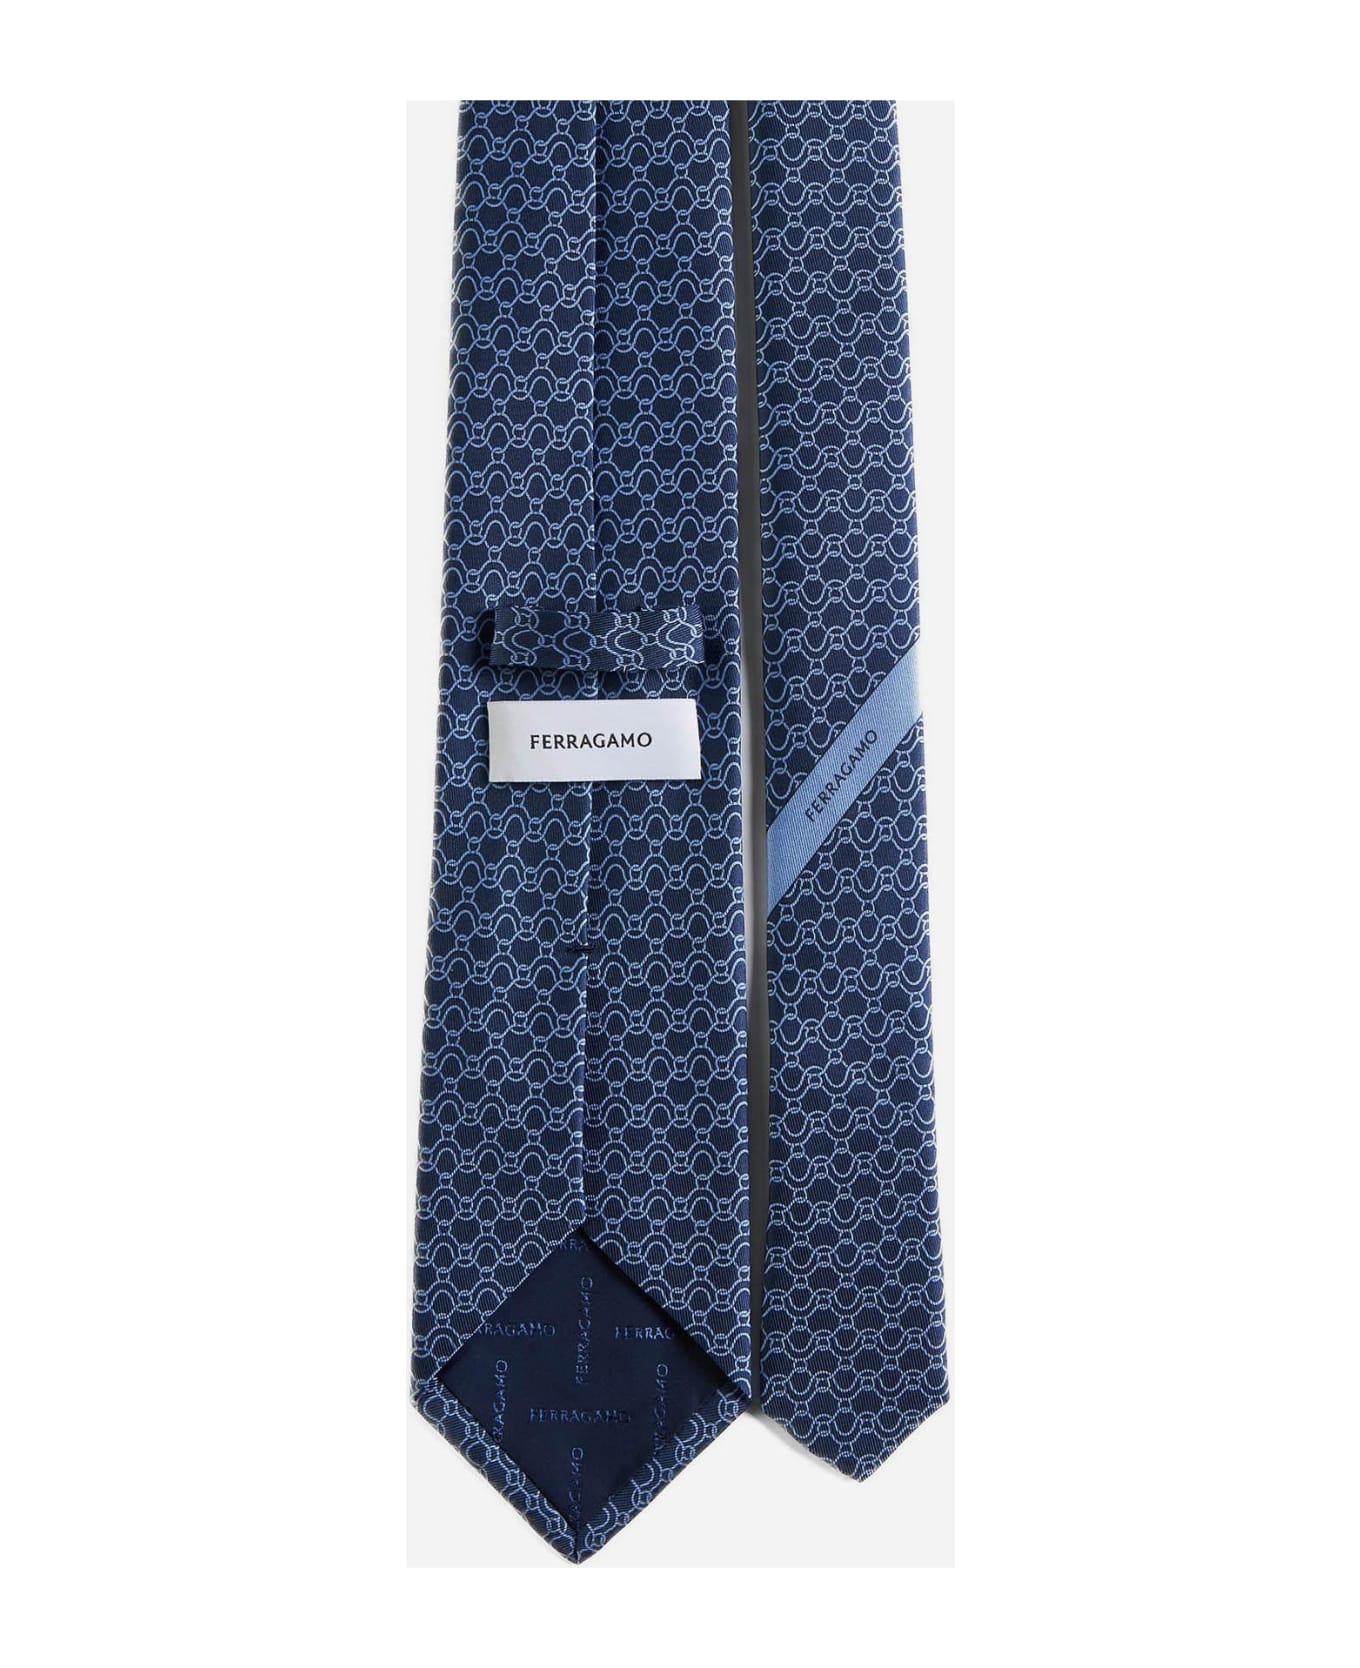 Ferragamo Traccia Silk Tie - blue ネクタイ